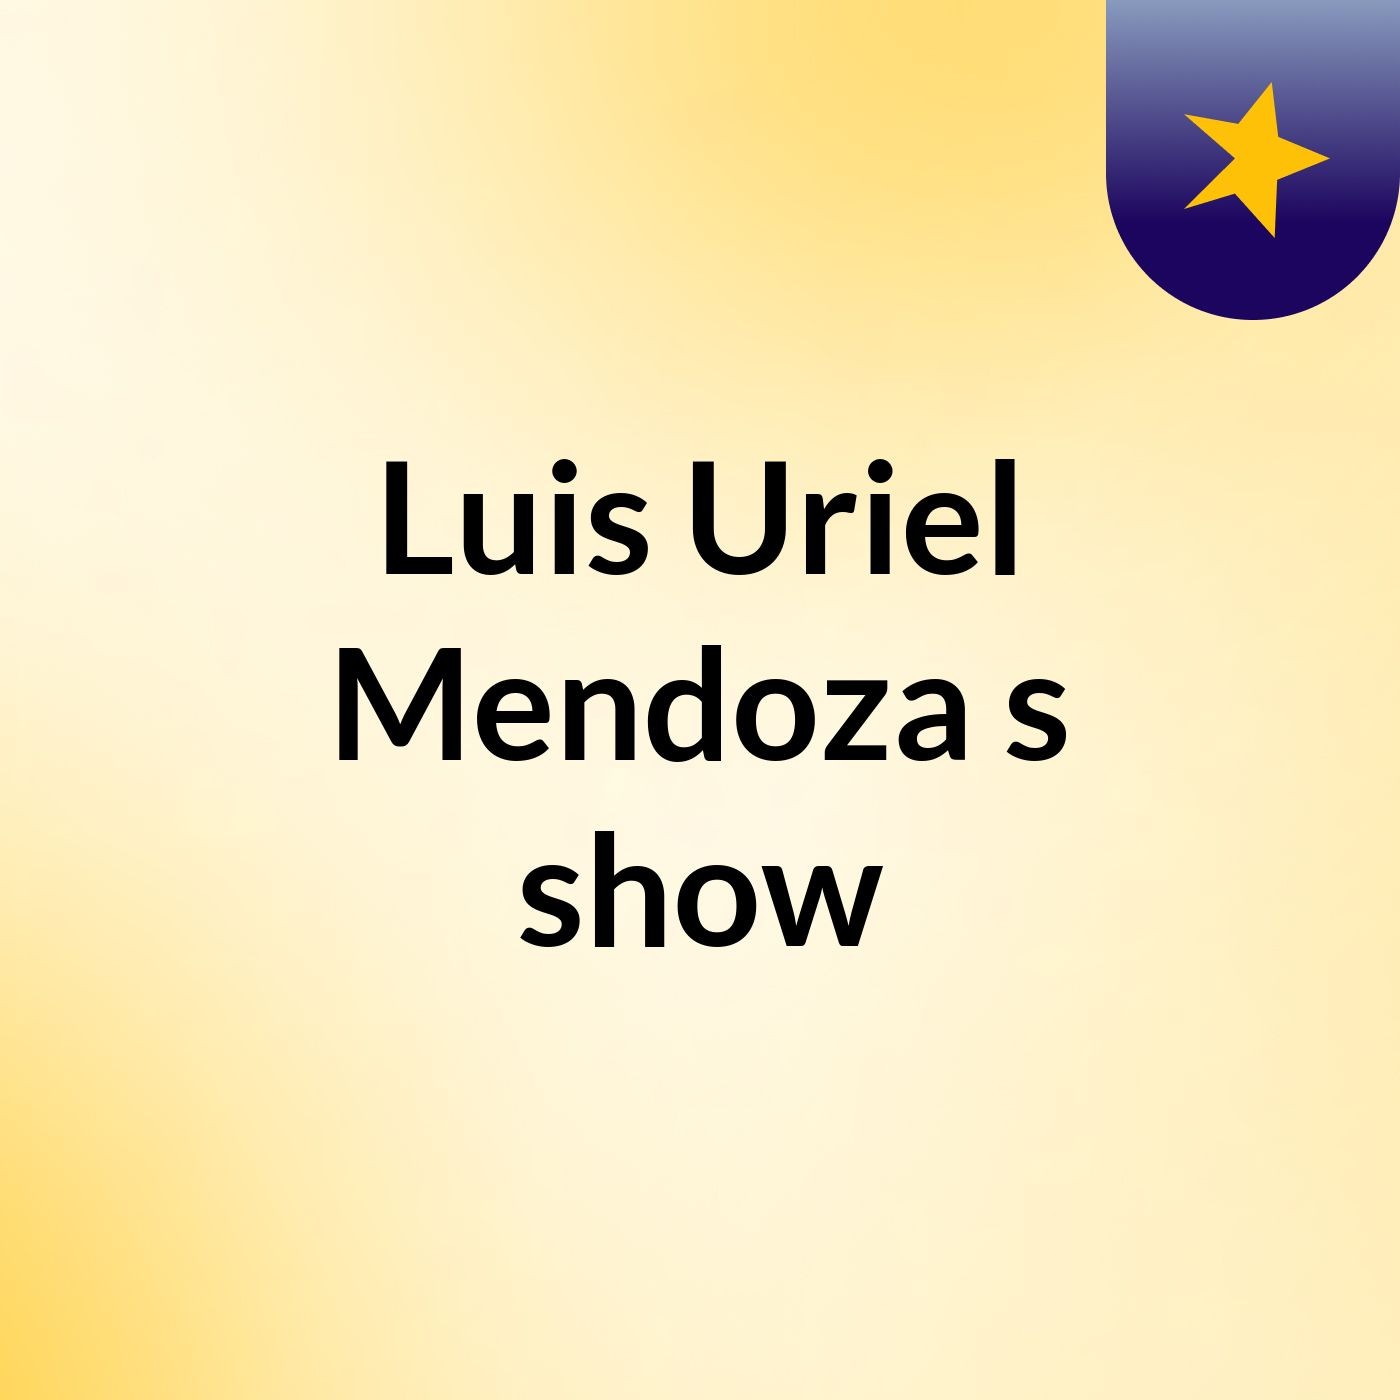 Luis Uriel Mendoza's show